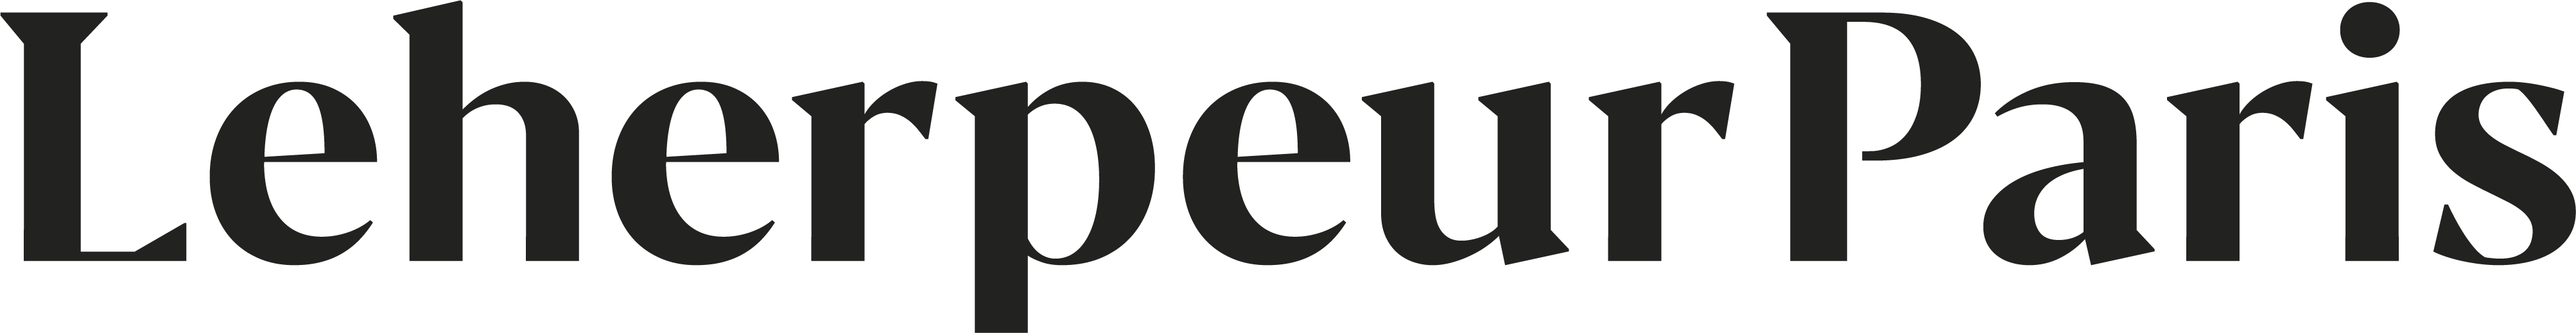 LeherpeurParis-logo.png